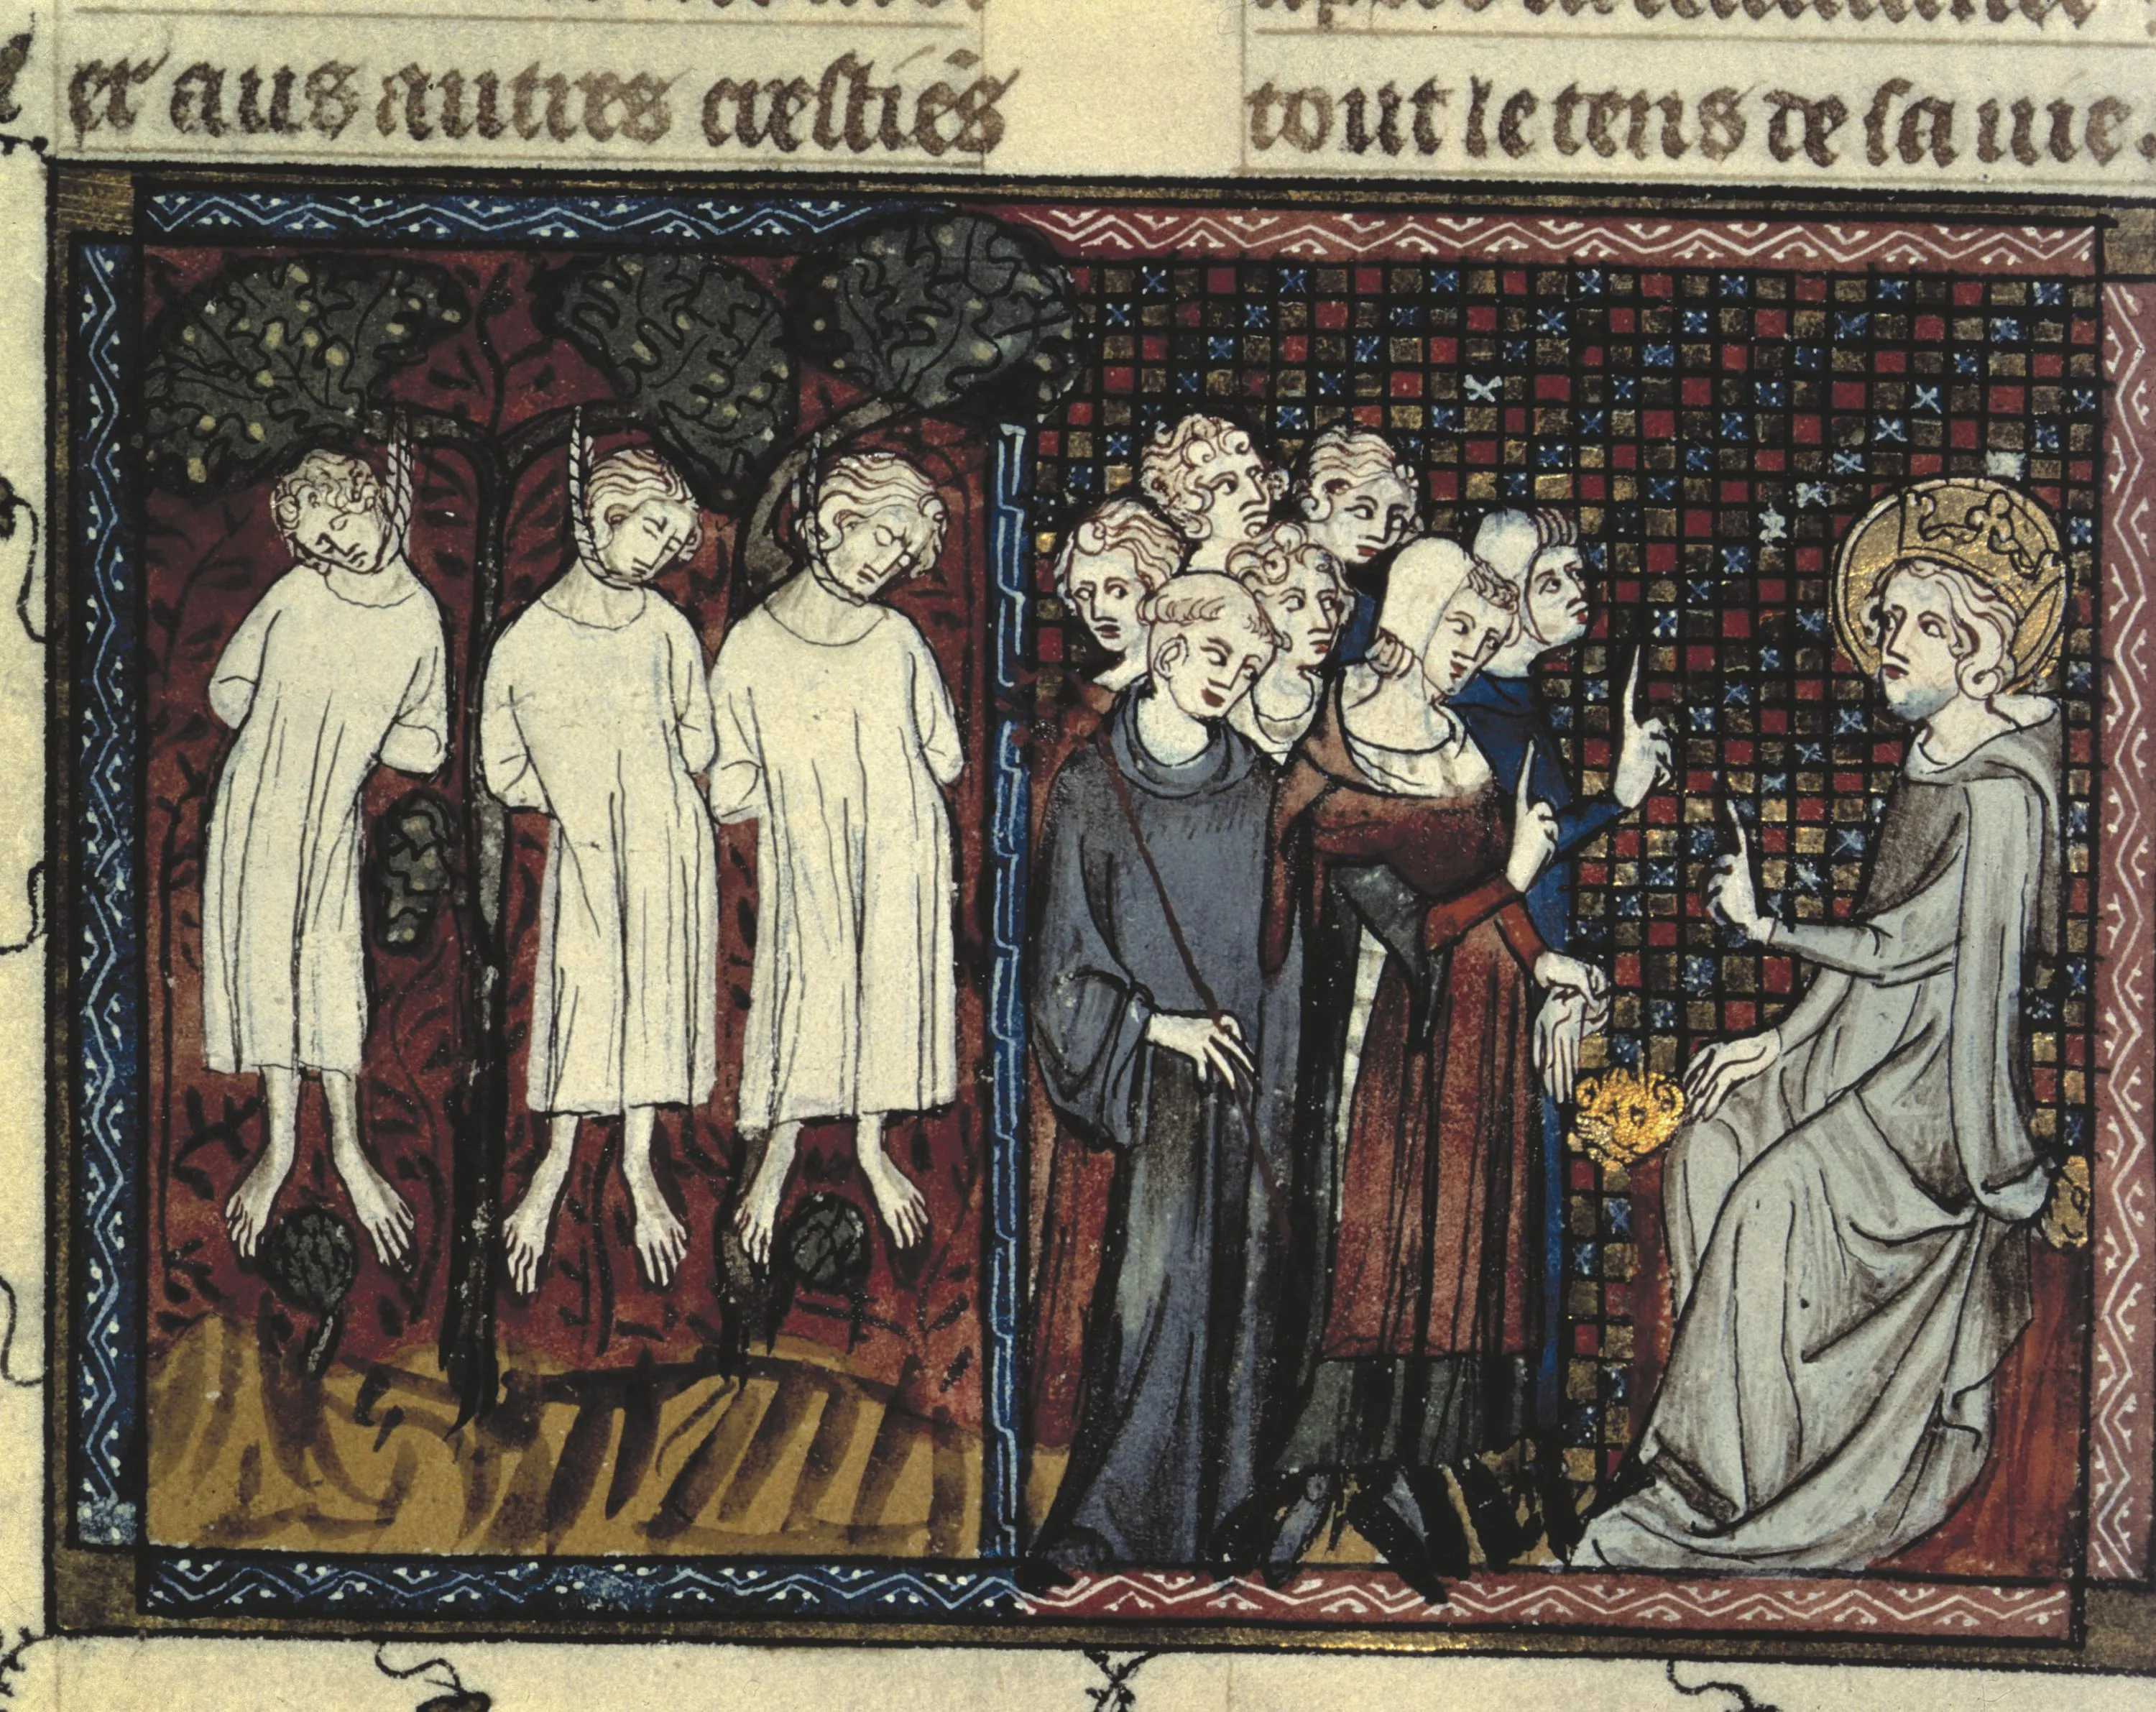 Louis IX et l'affirmation de la justice royale (1259)